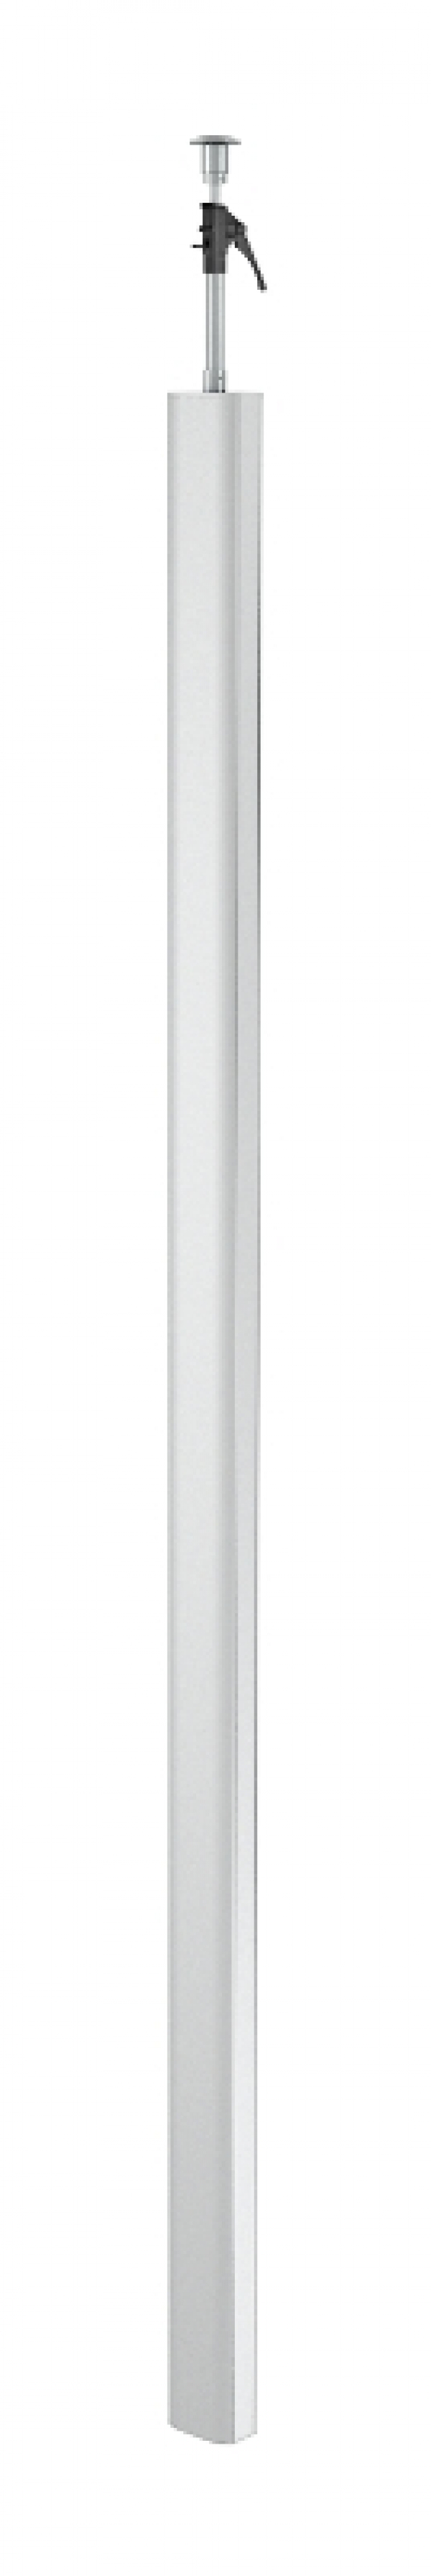 6289972 - OBO BETTERMANN Электромонтажная колонна 3,3-3,5 м 2-х сторонняя Modul45 80x130x3300 мм (алюминий) (ISSDM45EL).